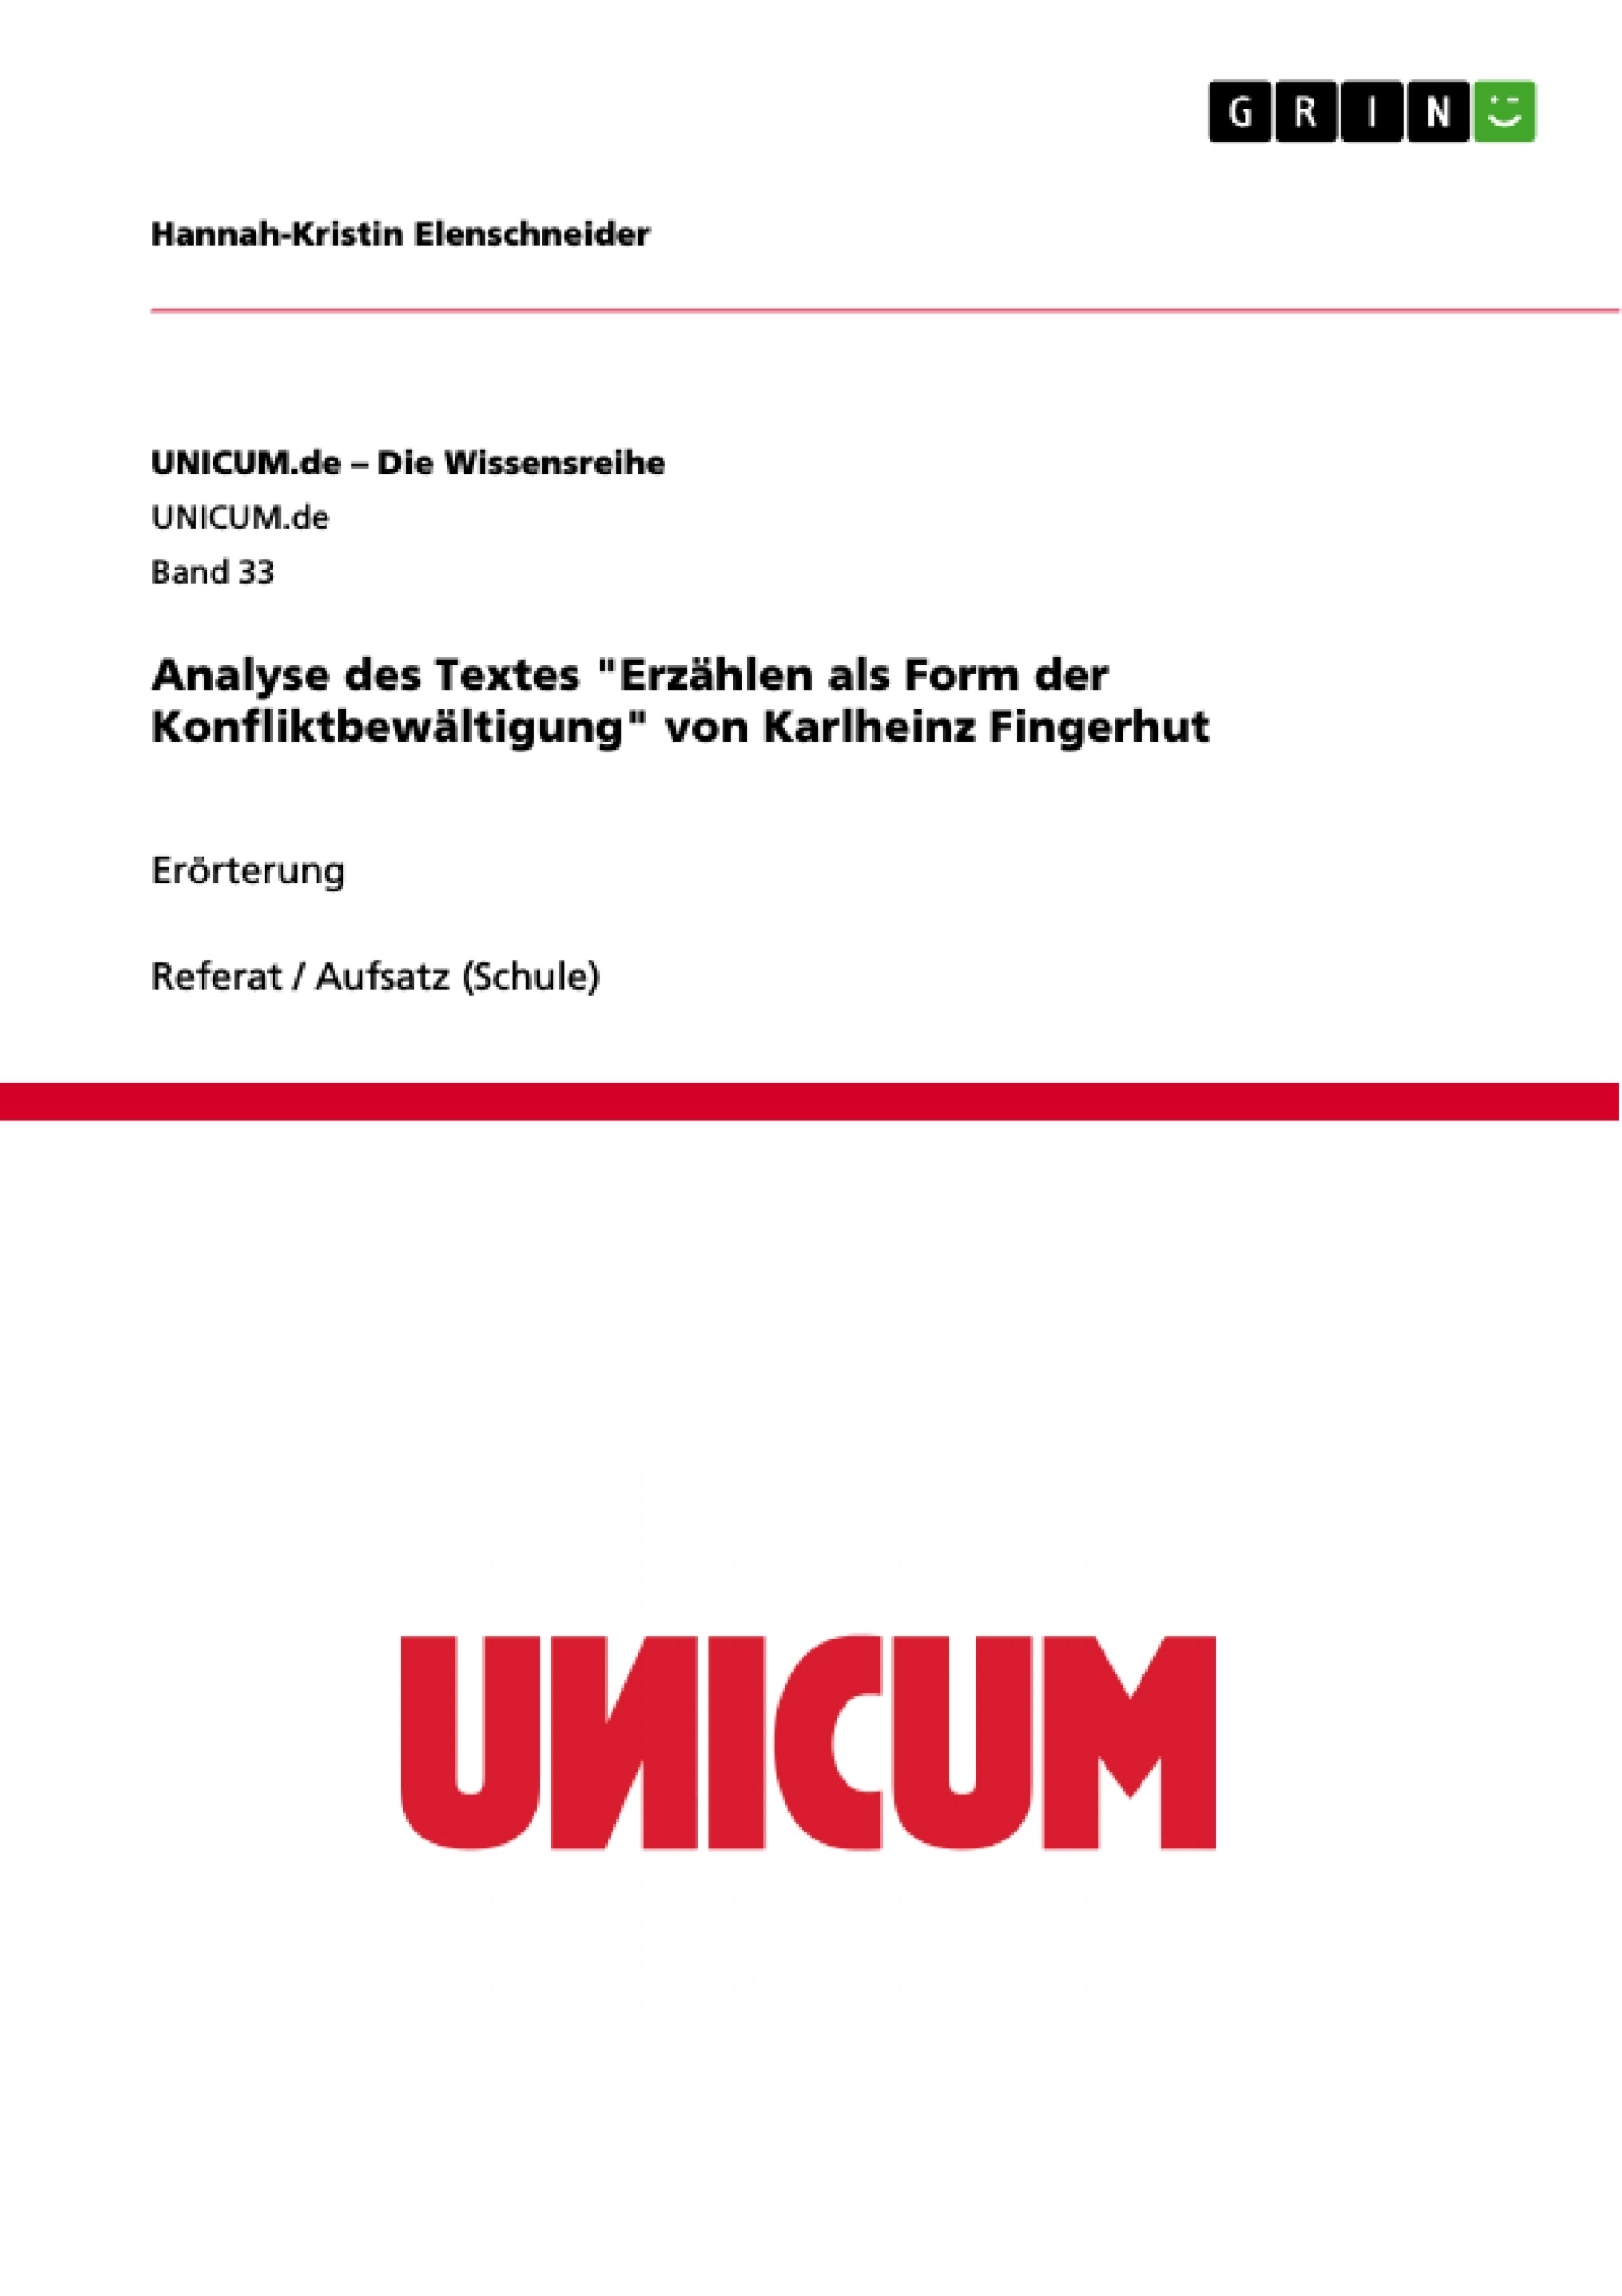 Title: Analyse des Textes "Erzählen als Form der Konfliktbewältigung" von Karlheinz Fingerhut